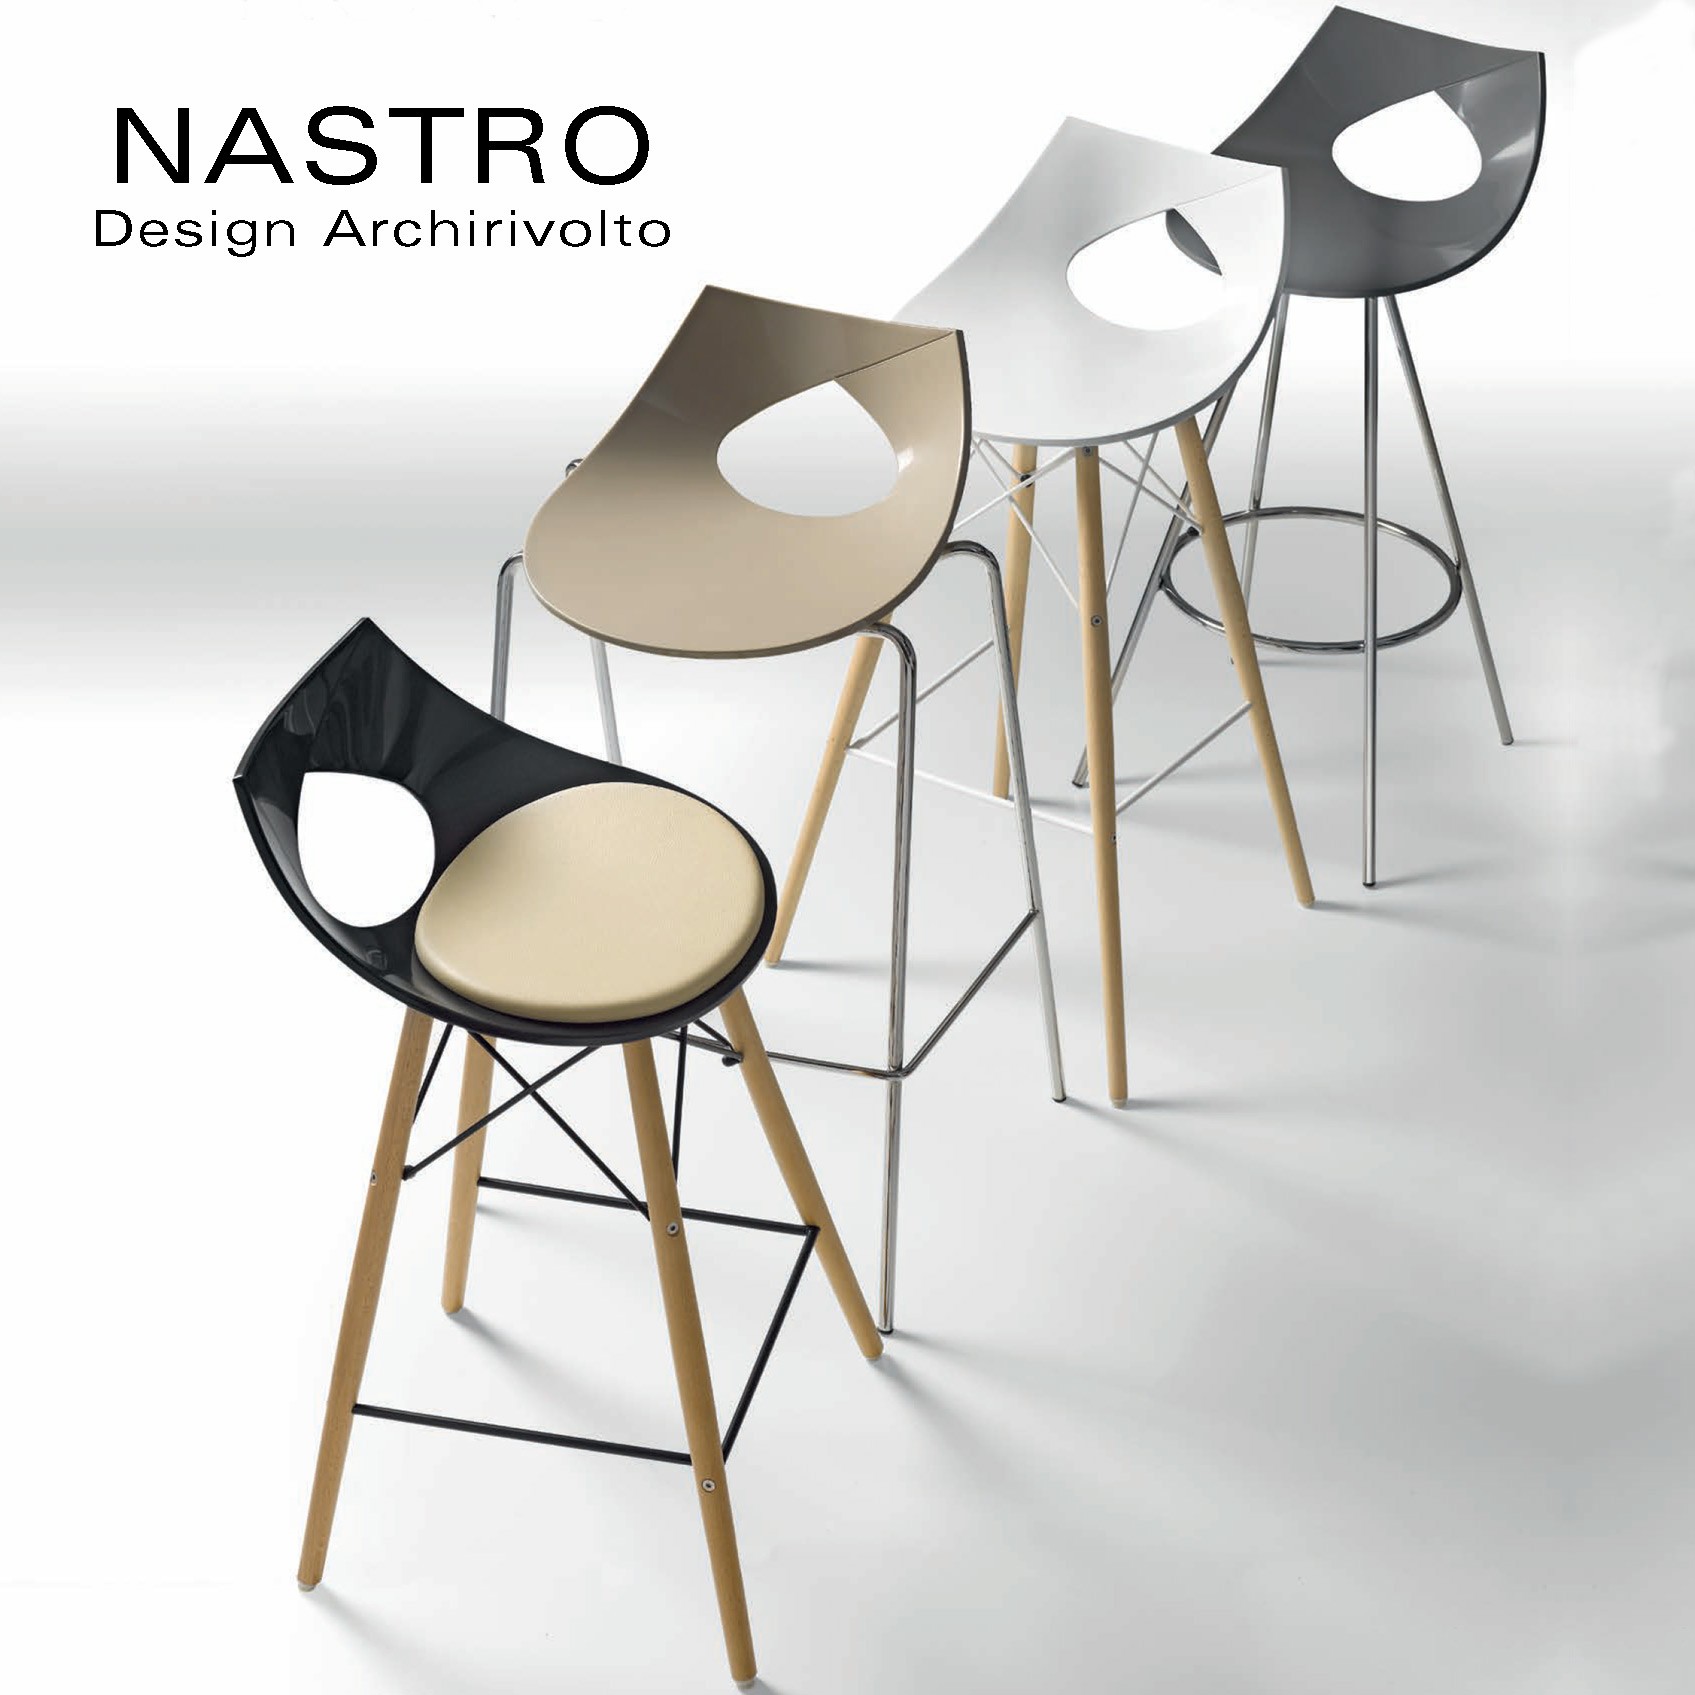 Chaise design NASTRO, assise multiplis de bois placage Zébrano avec  coussin, piétement bois de hêtre massif vernis.